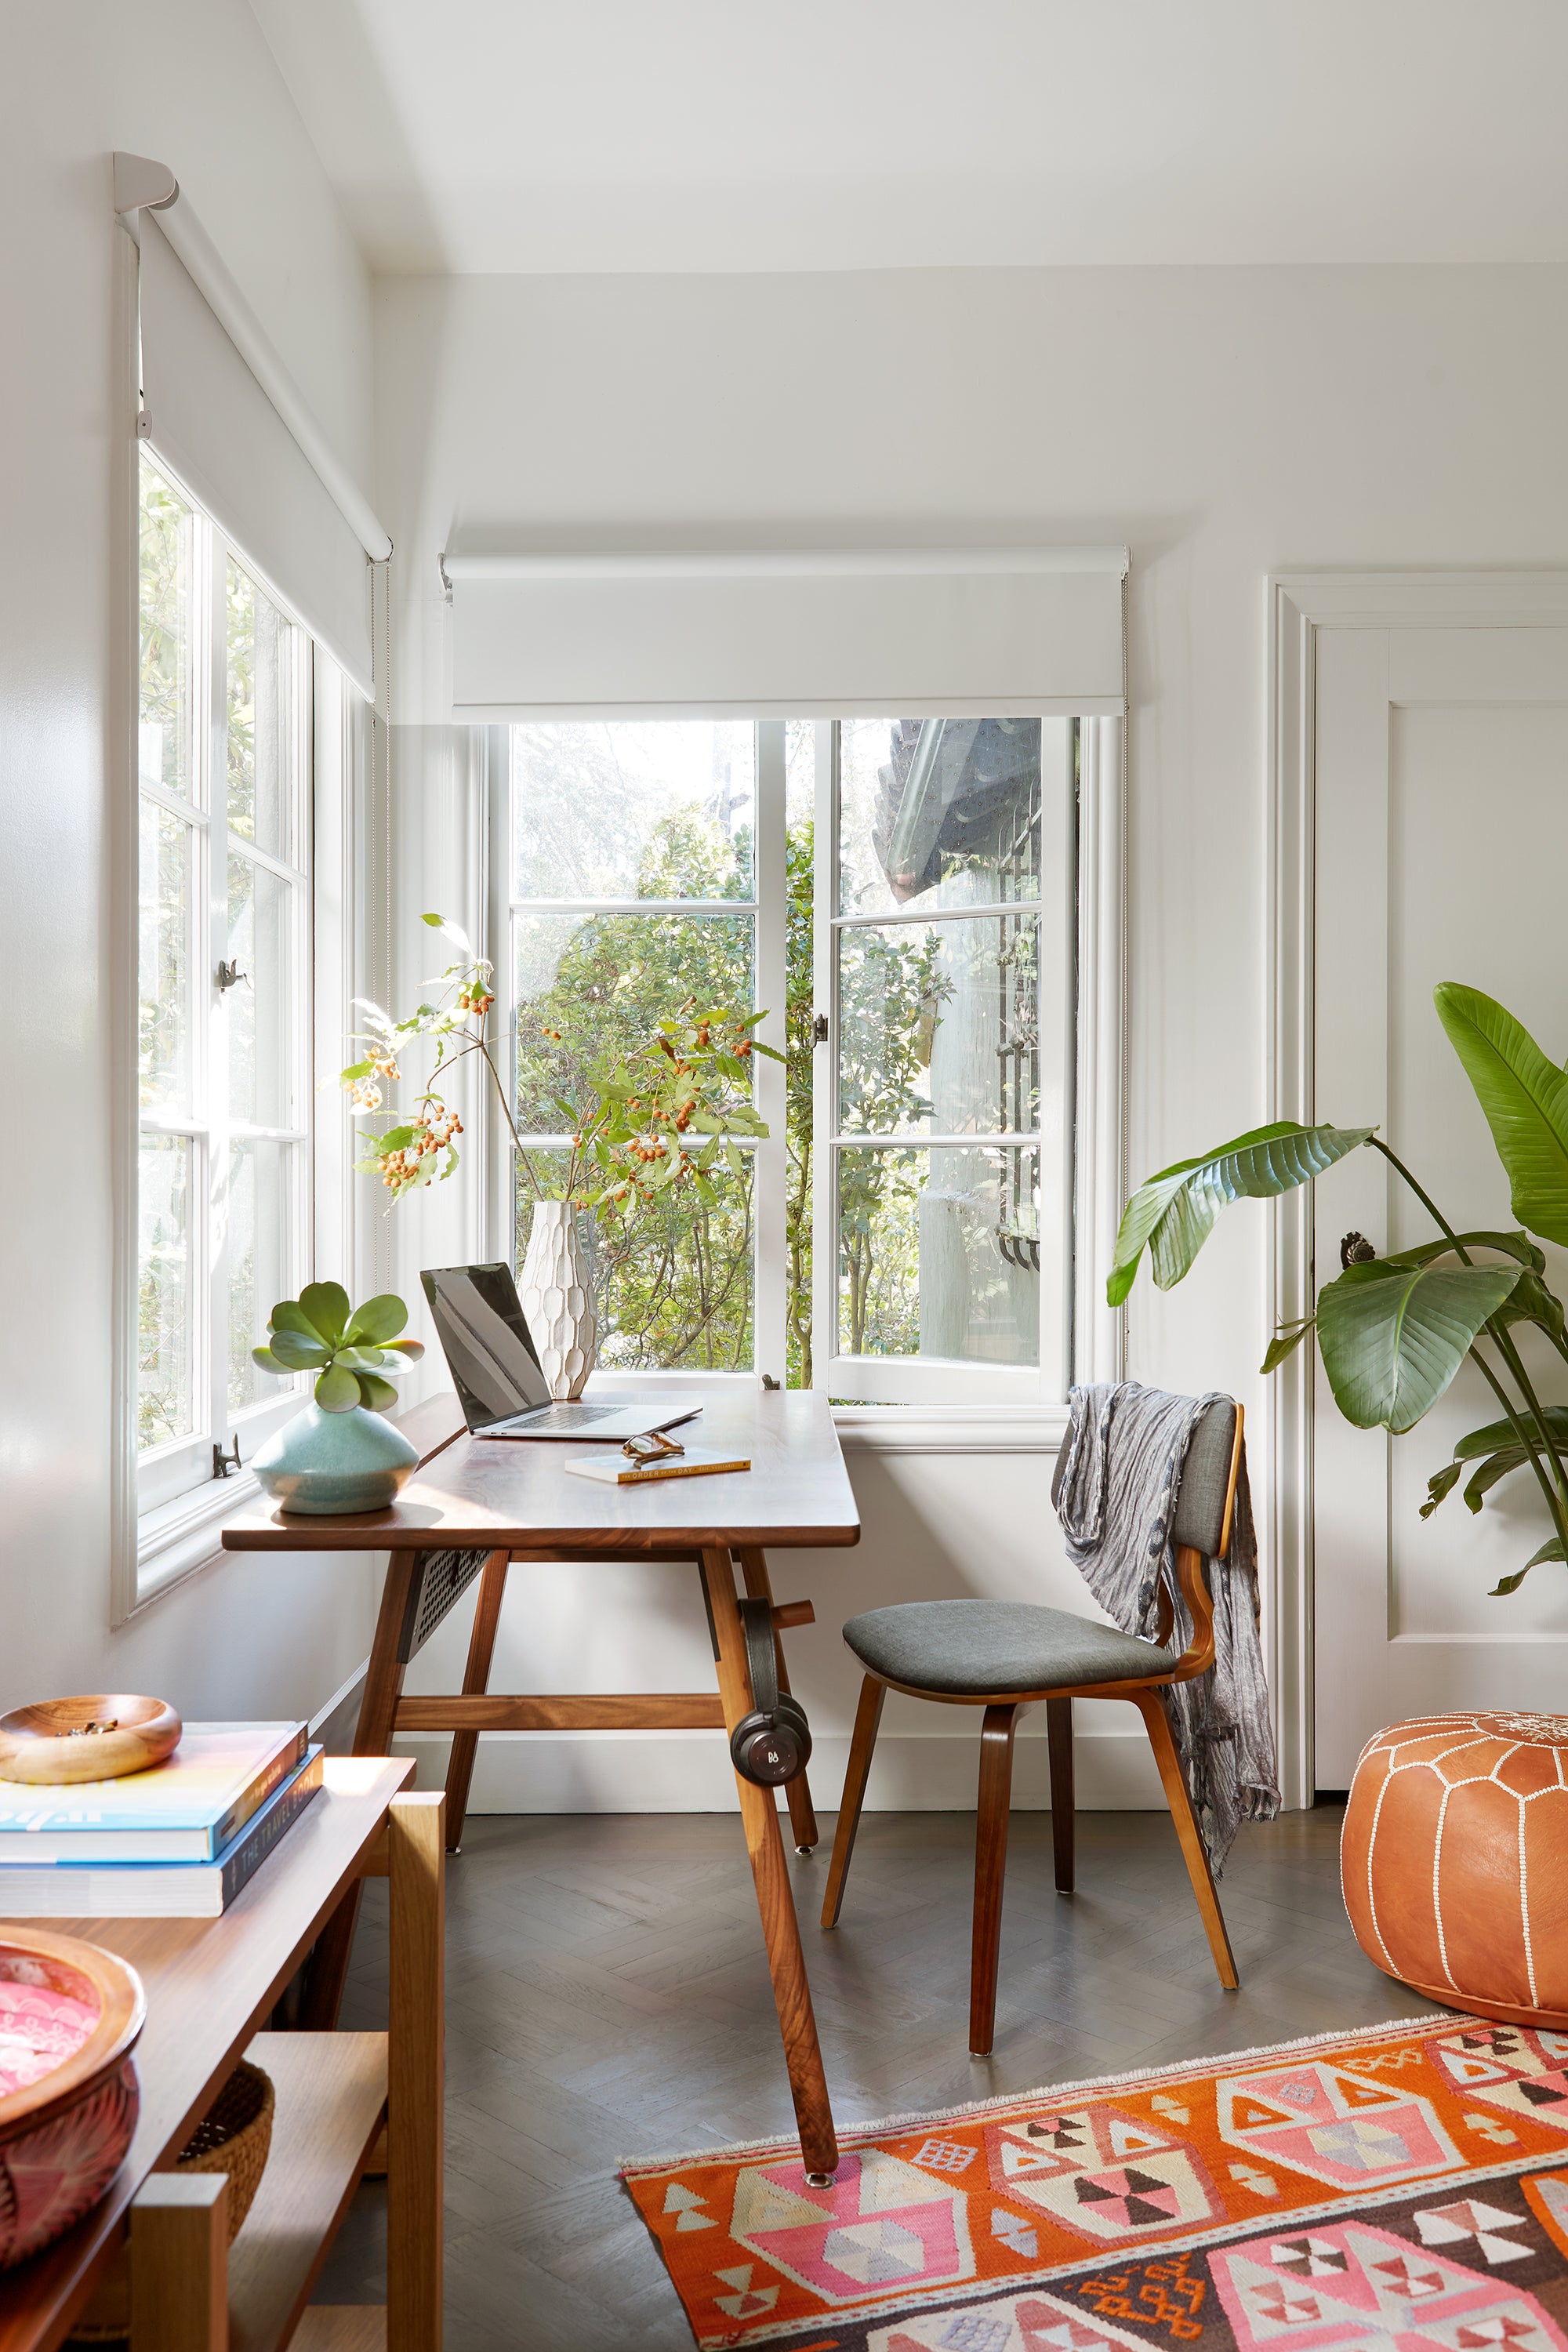 Bleu Leman Design's Home Office Setup Walnut Desk